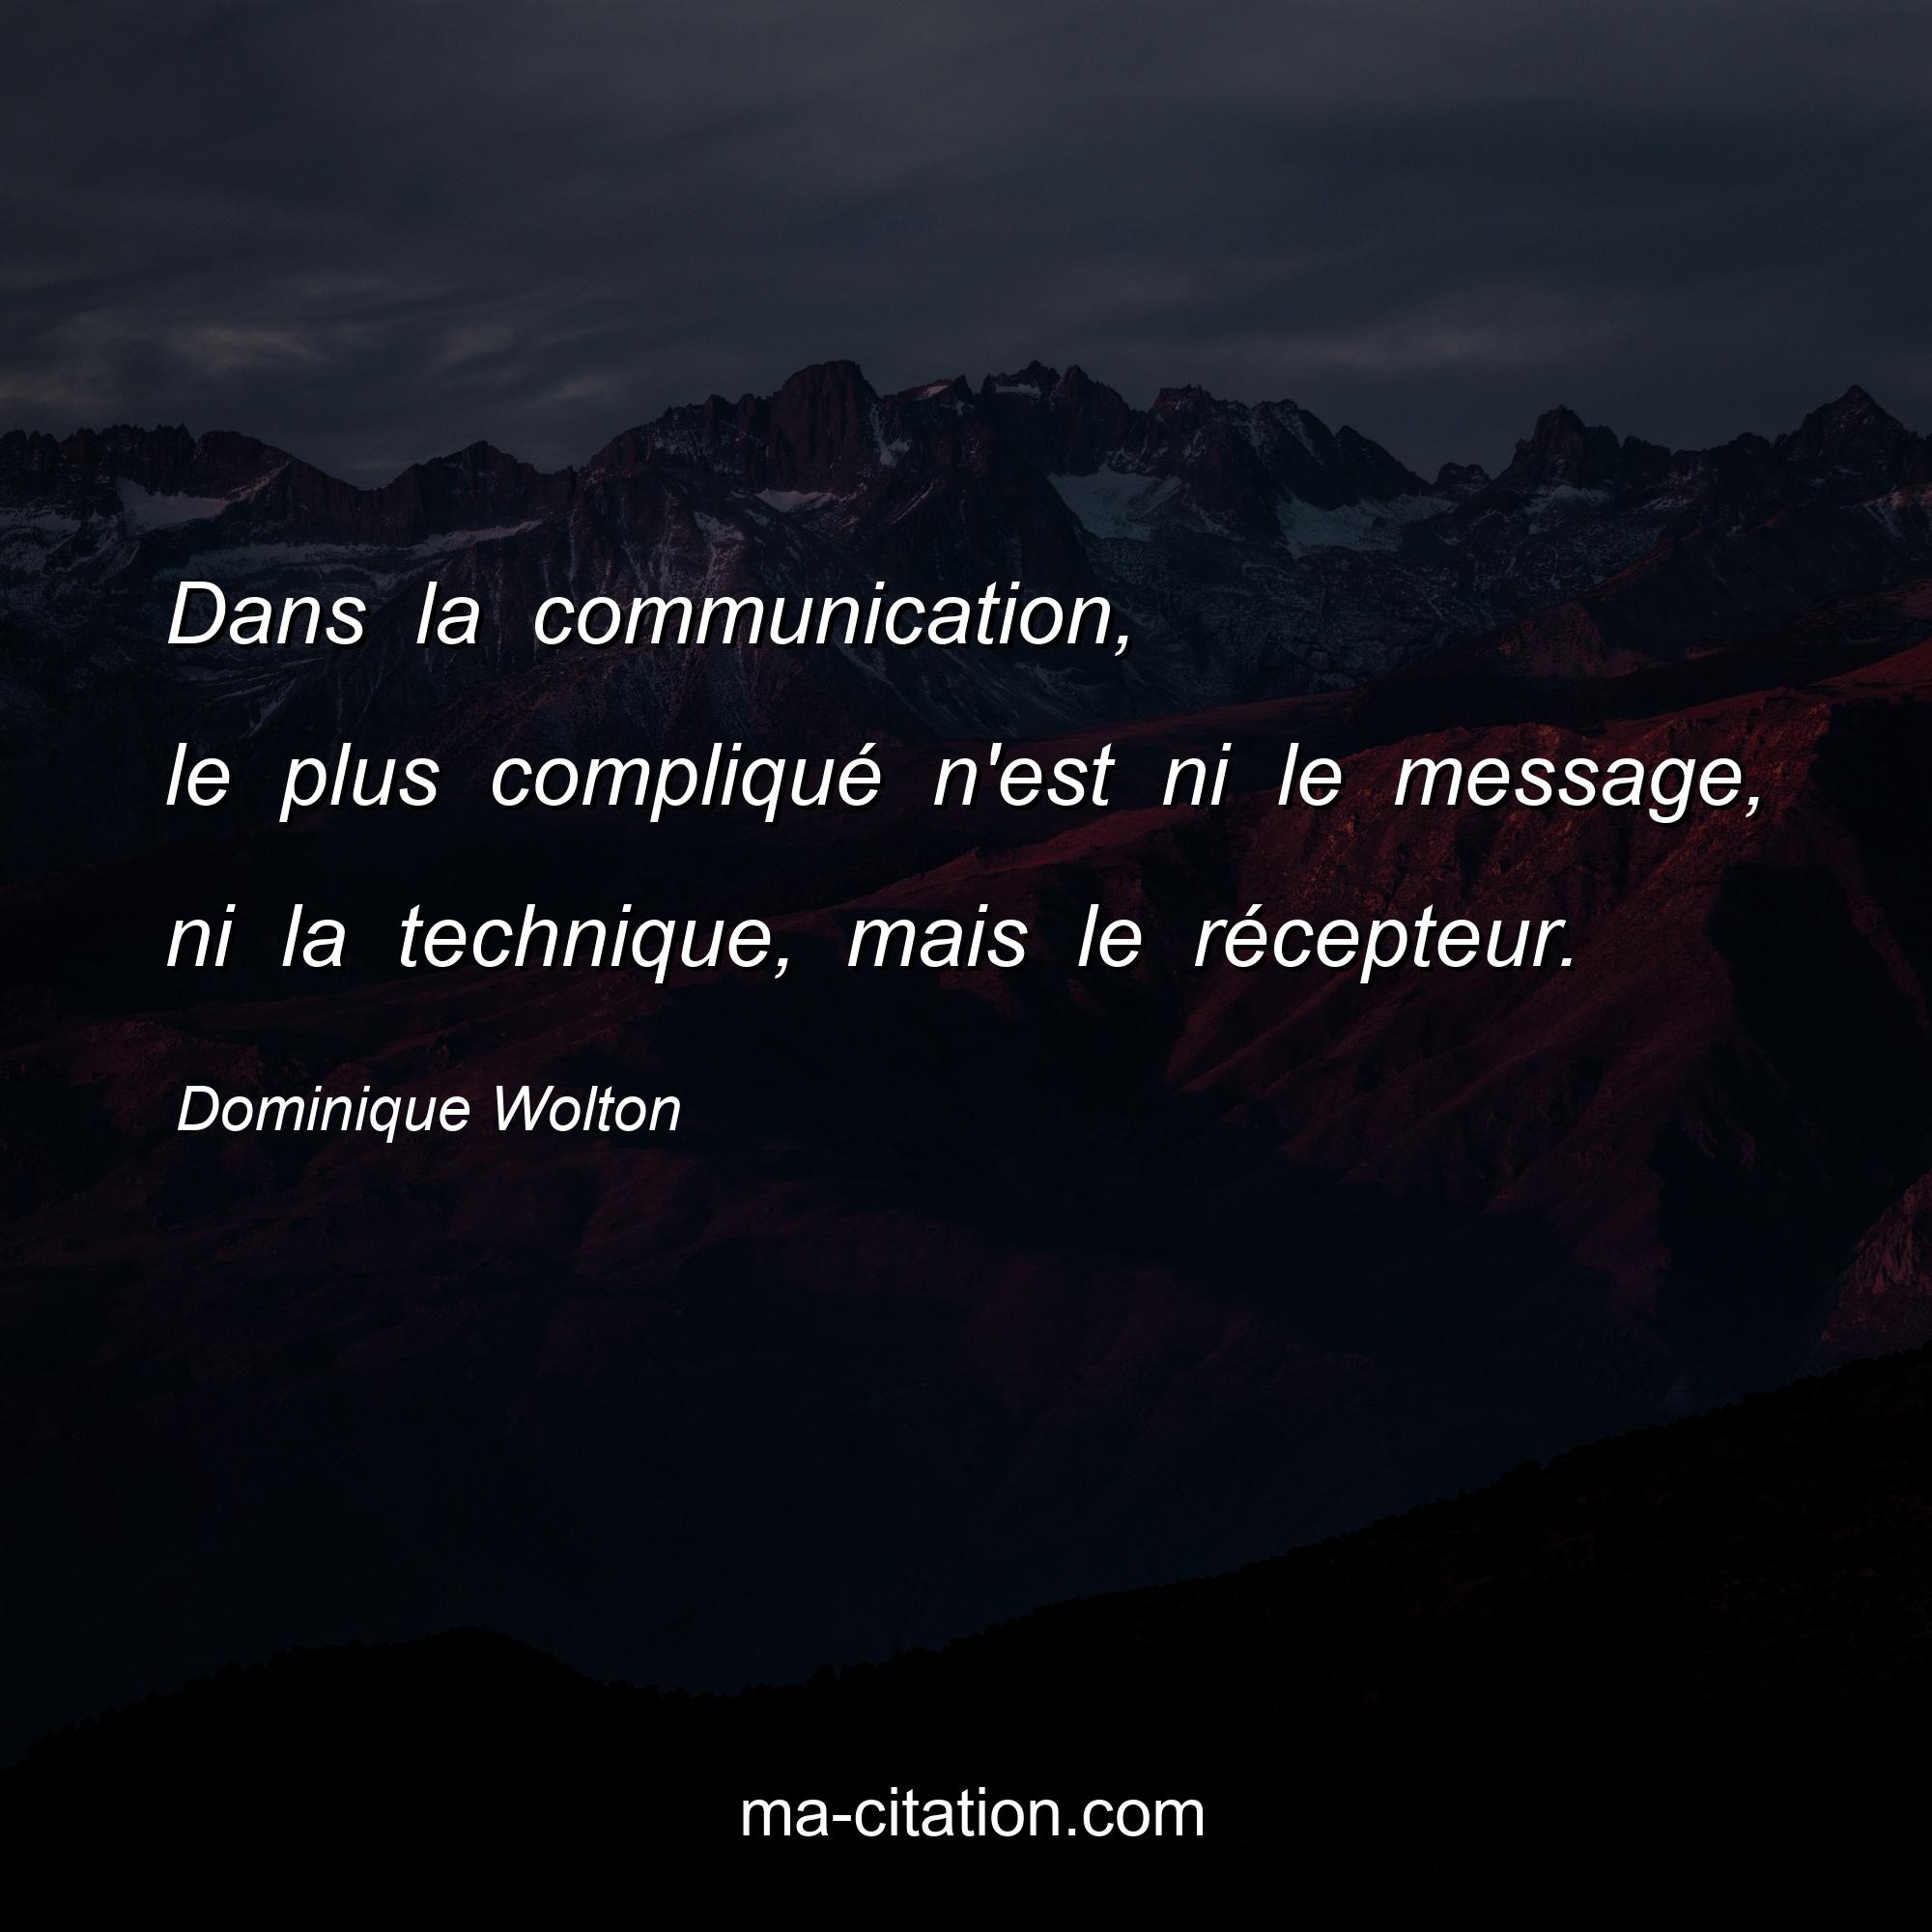 Dominique Wolton : Dans la communication, le plus compliqué n'est ni le message, ni la technique, mais le récepteur.